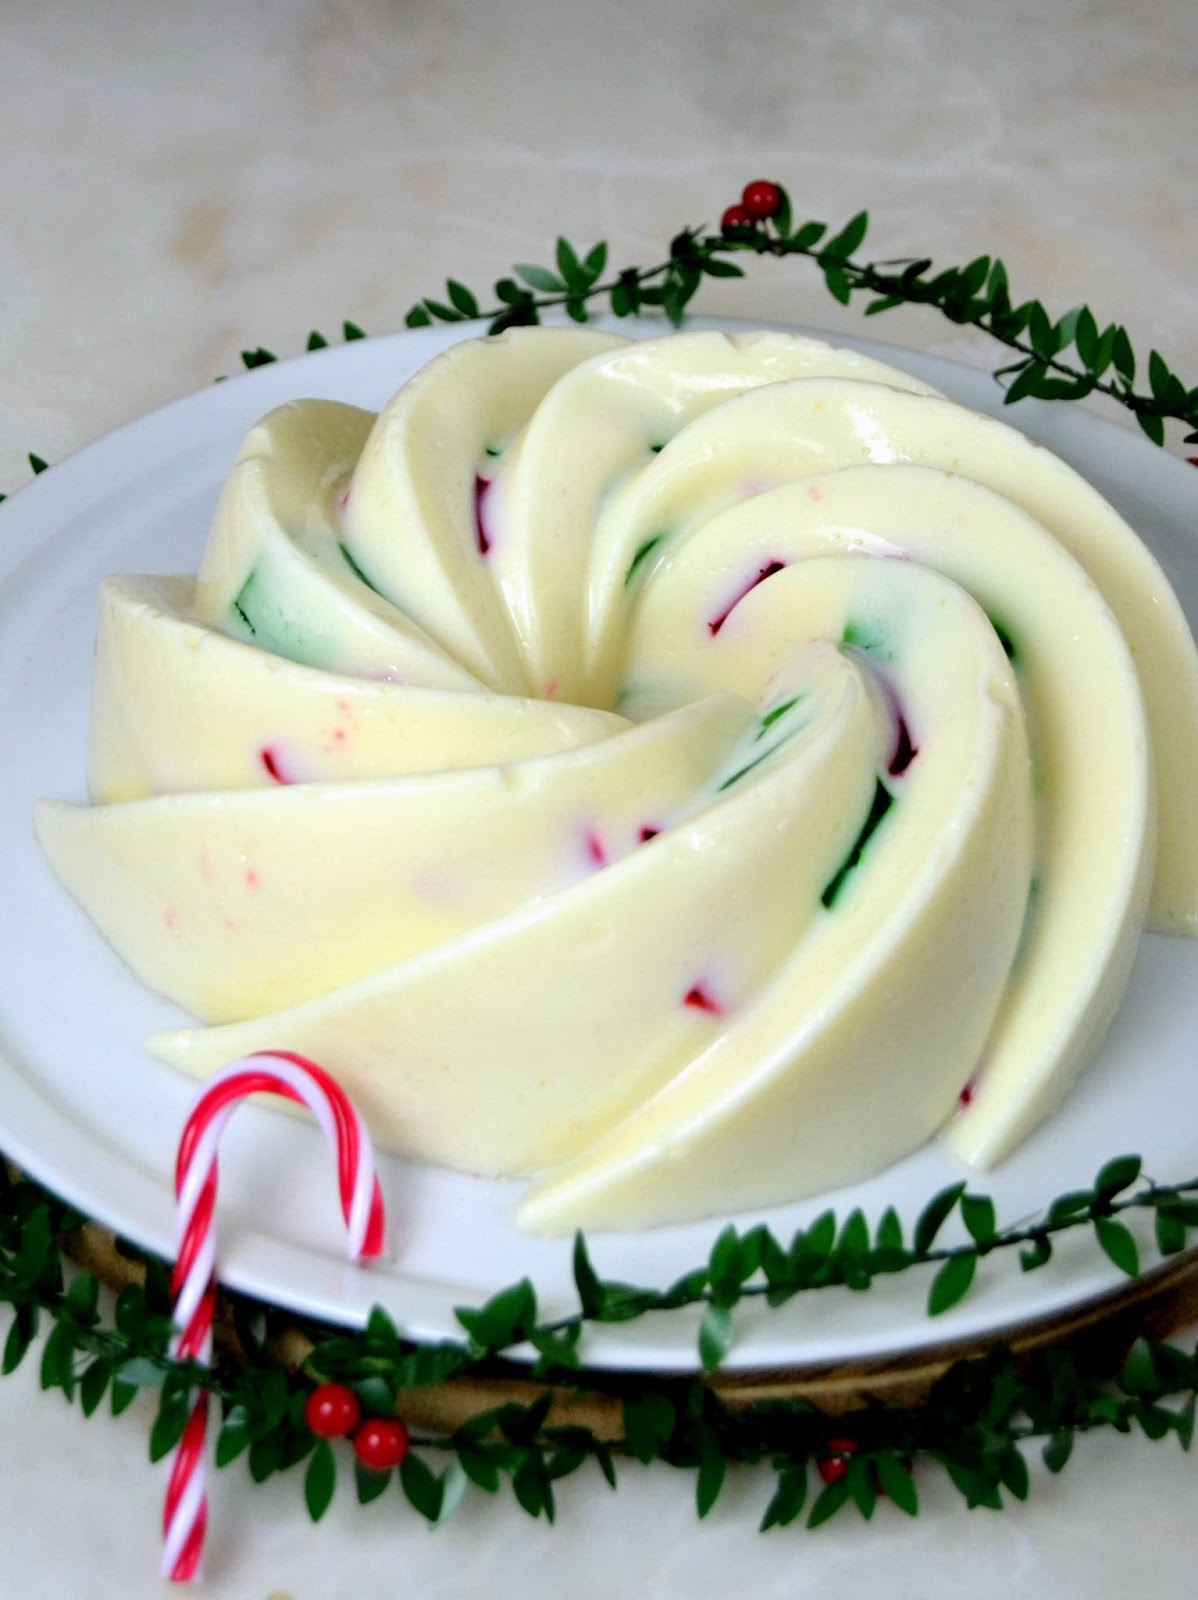 Gelatina de navidad o gelatina de colores con leche condensada